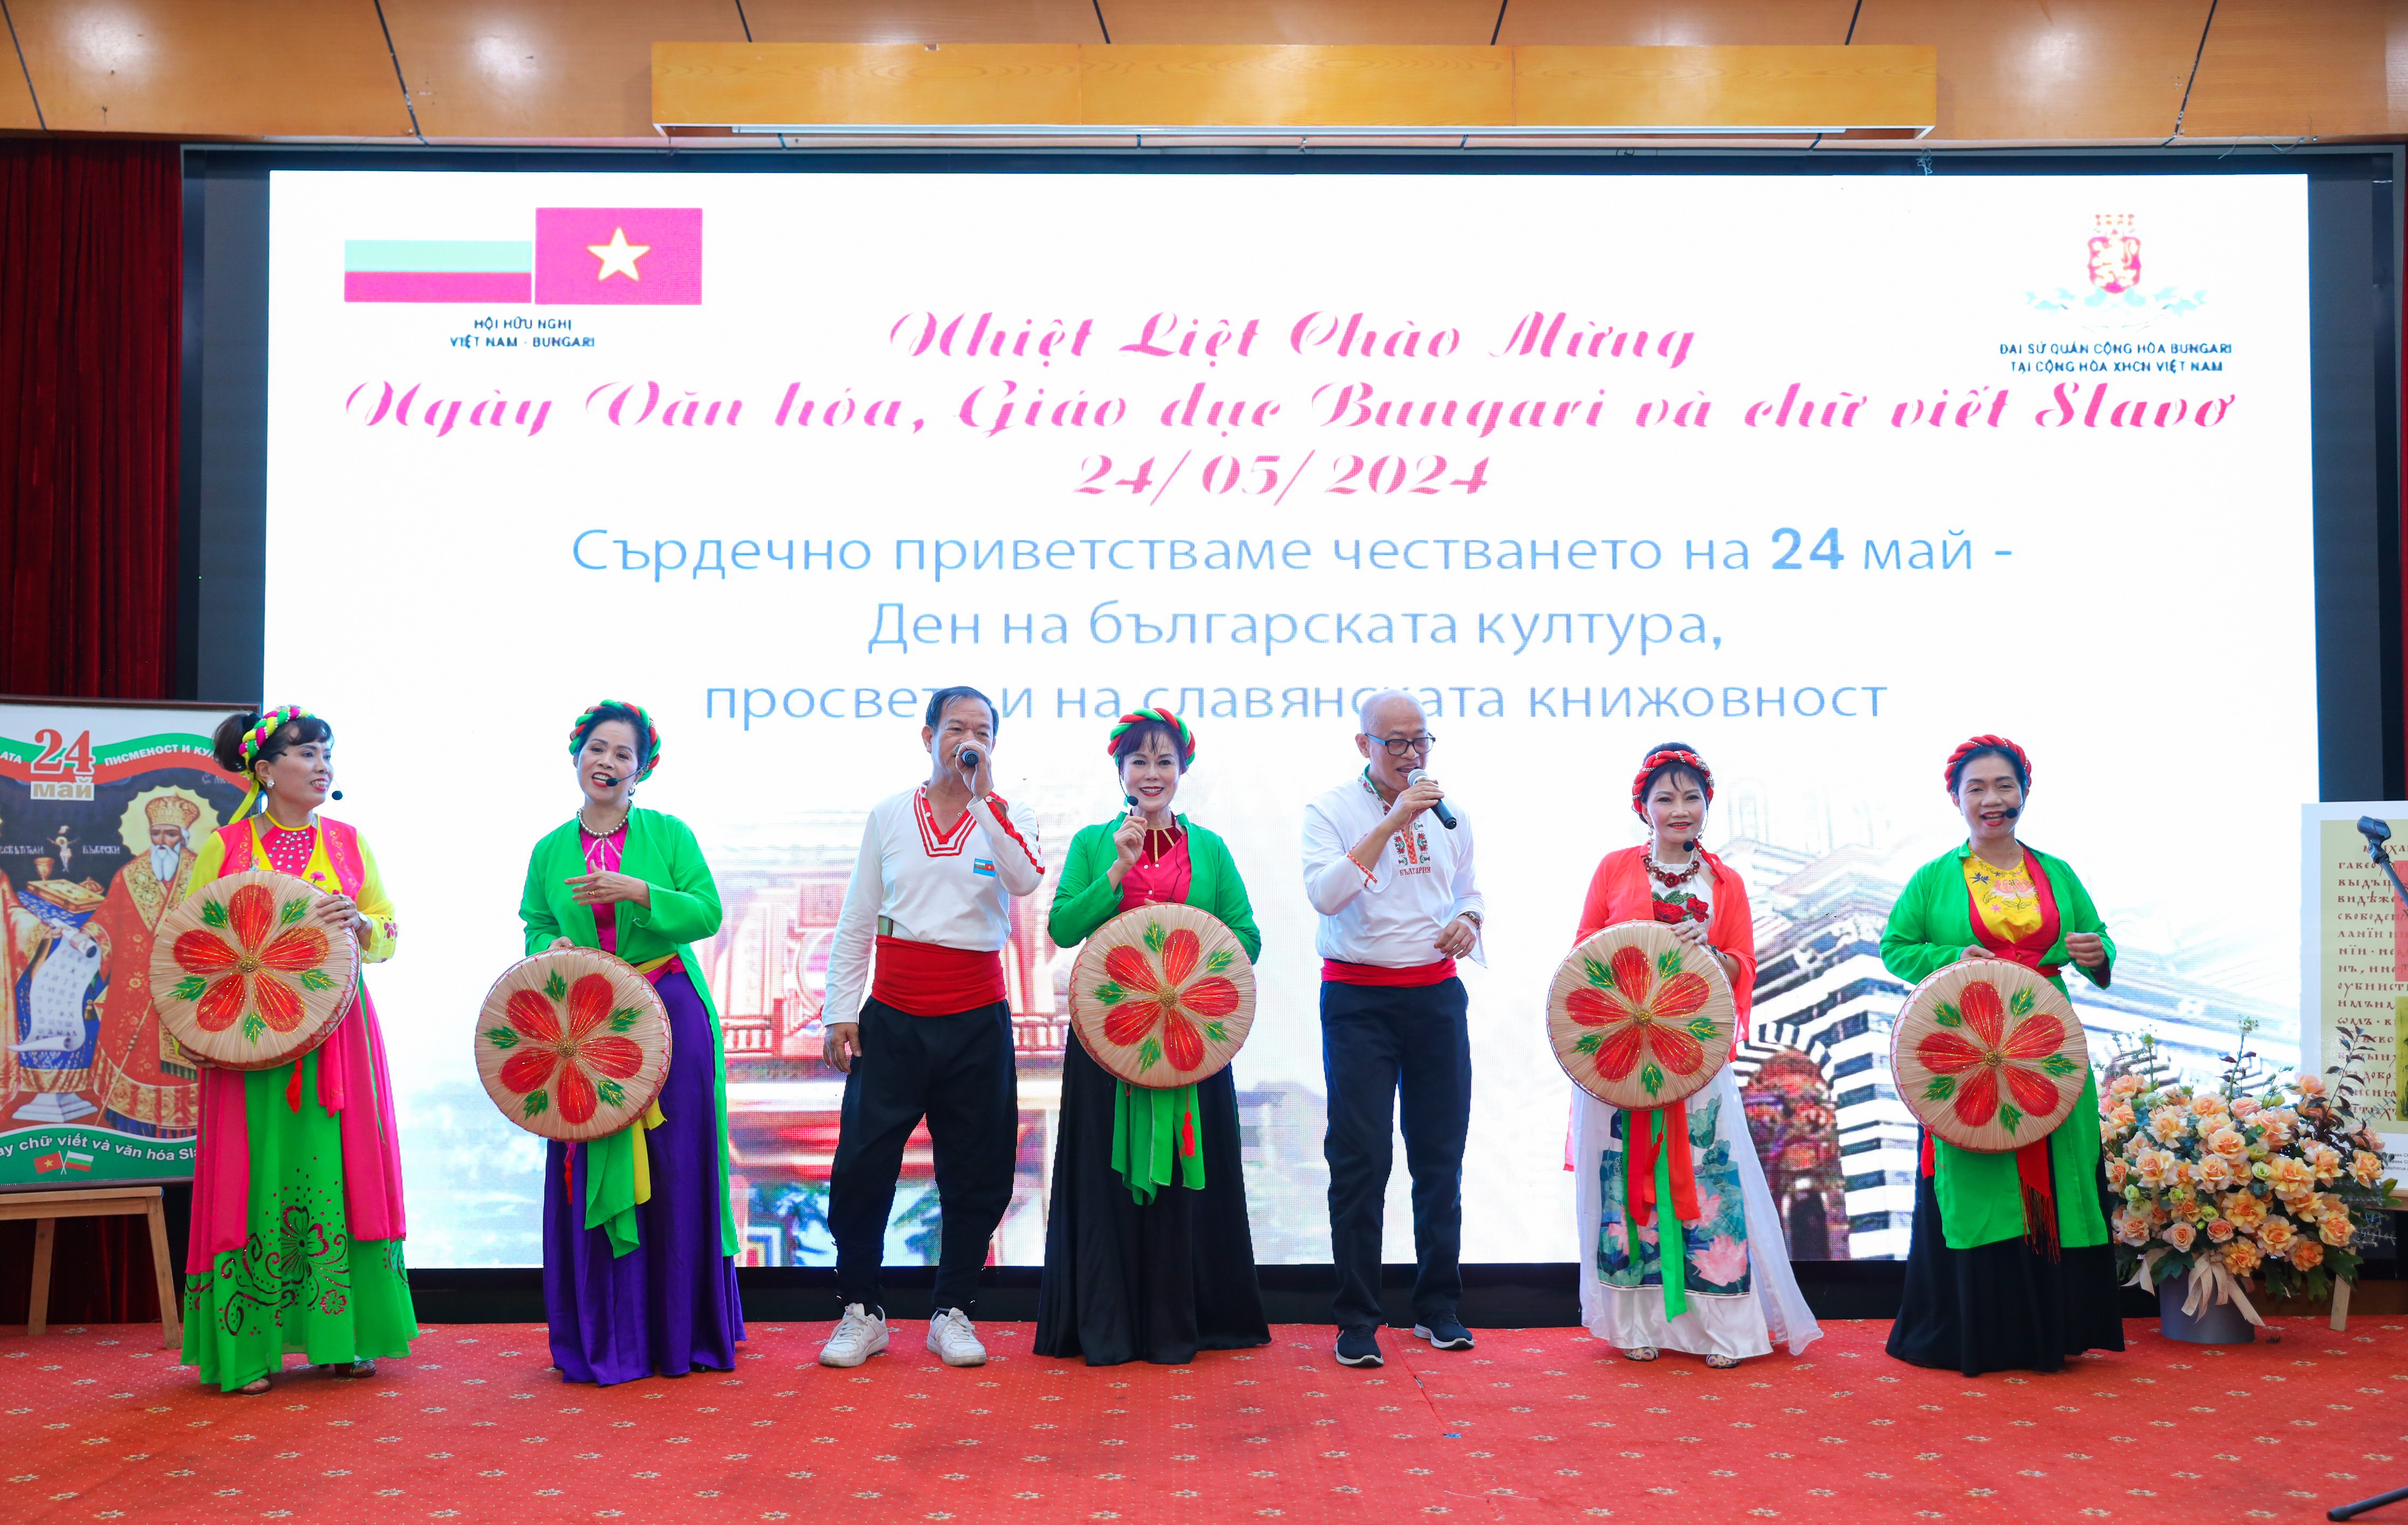 Văn hóa giáo dục là cơ sở xây dựng tình hữu nghị Việt Nam - Bulgaria